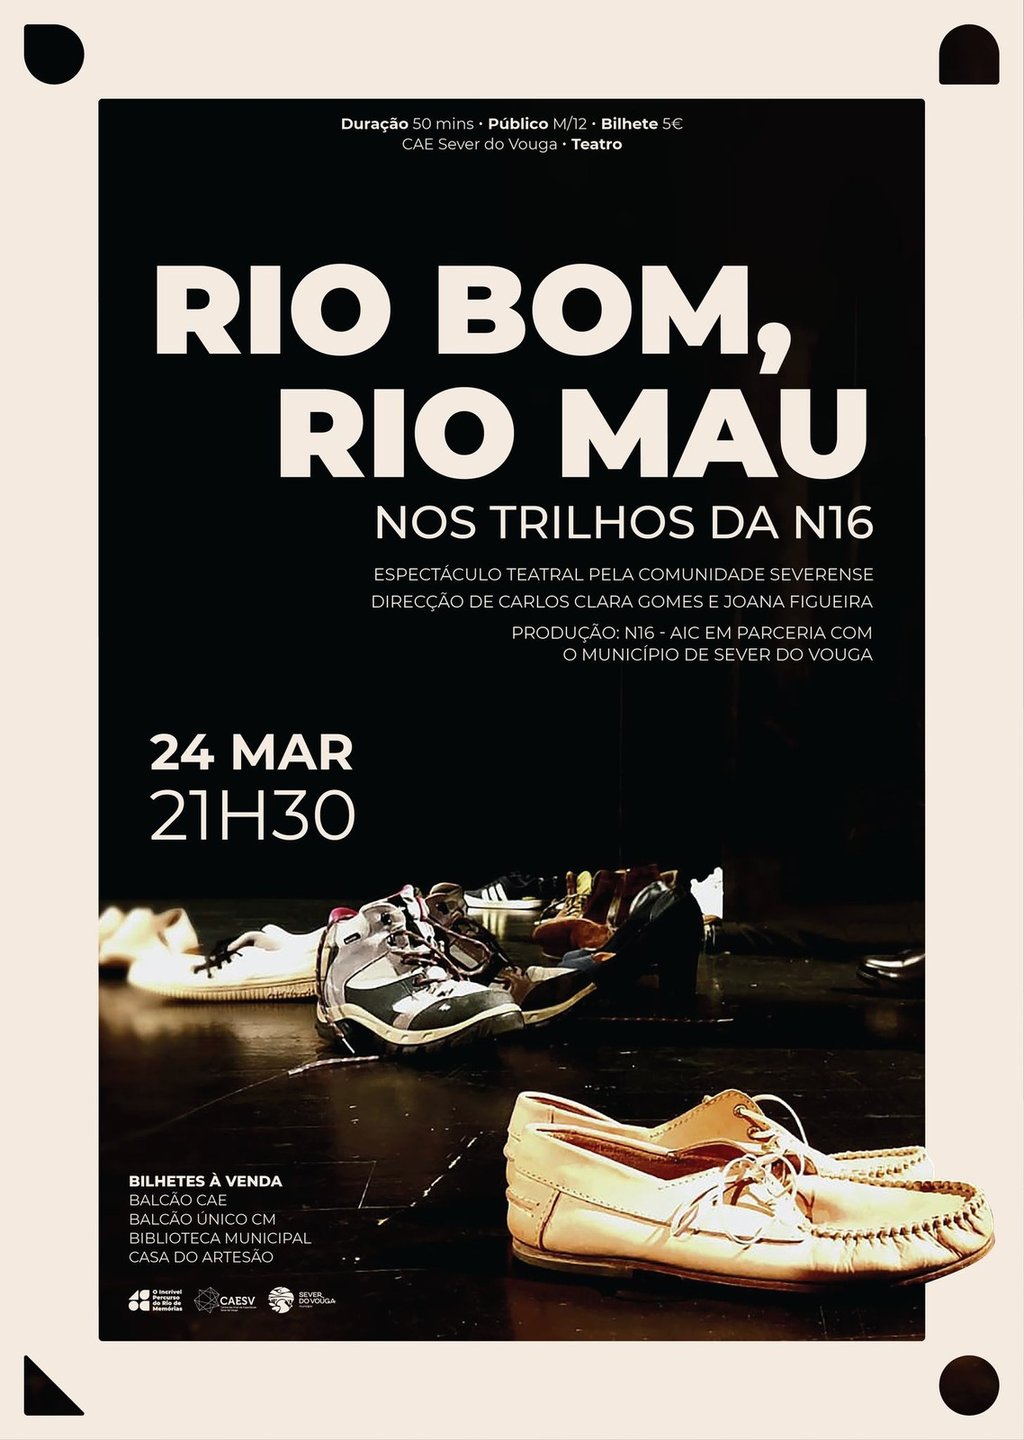 24 março - Tetaro - Rio Bom, Rio Mau - CAE